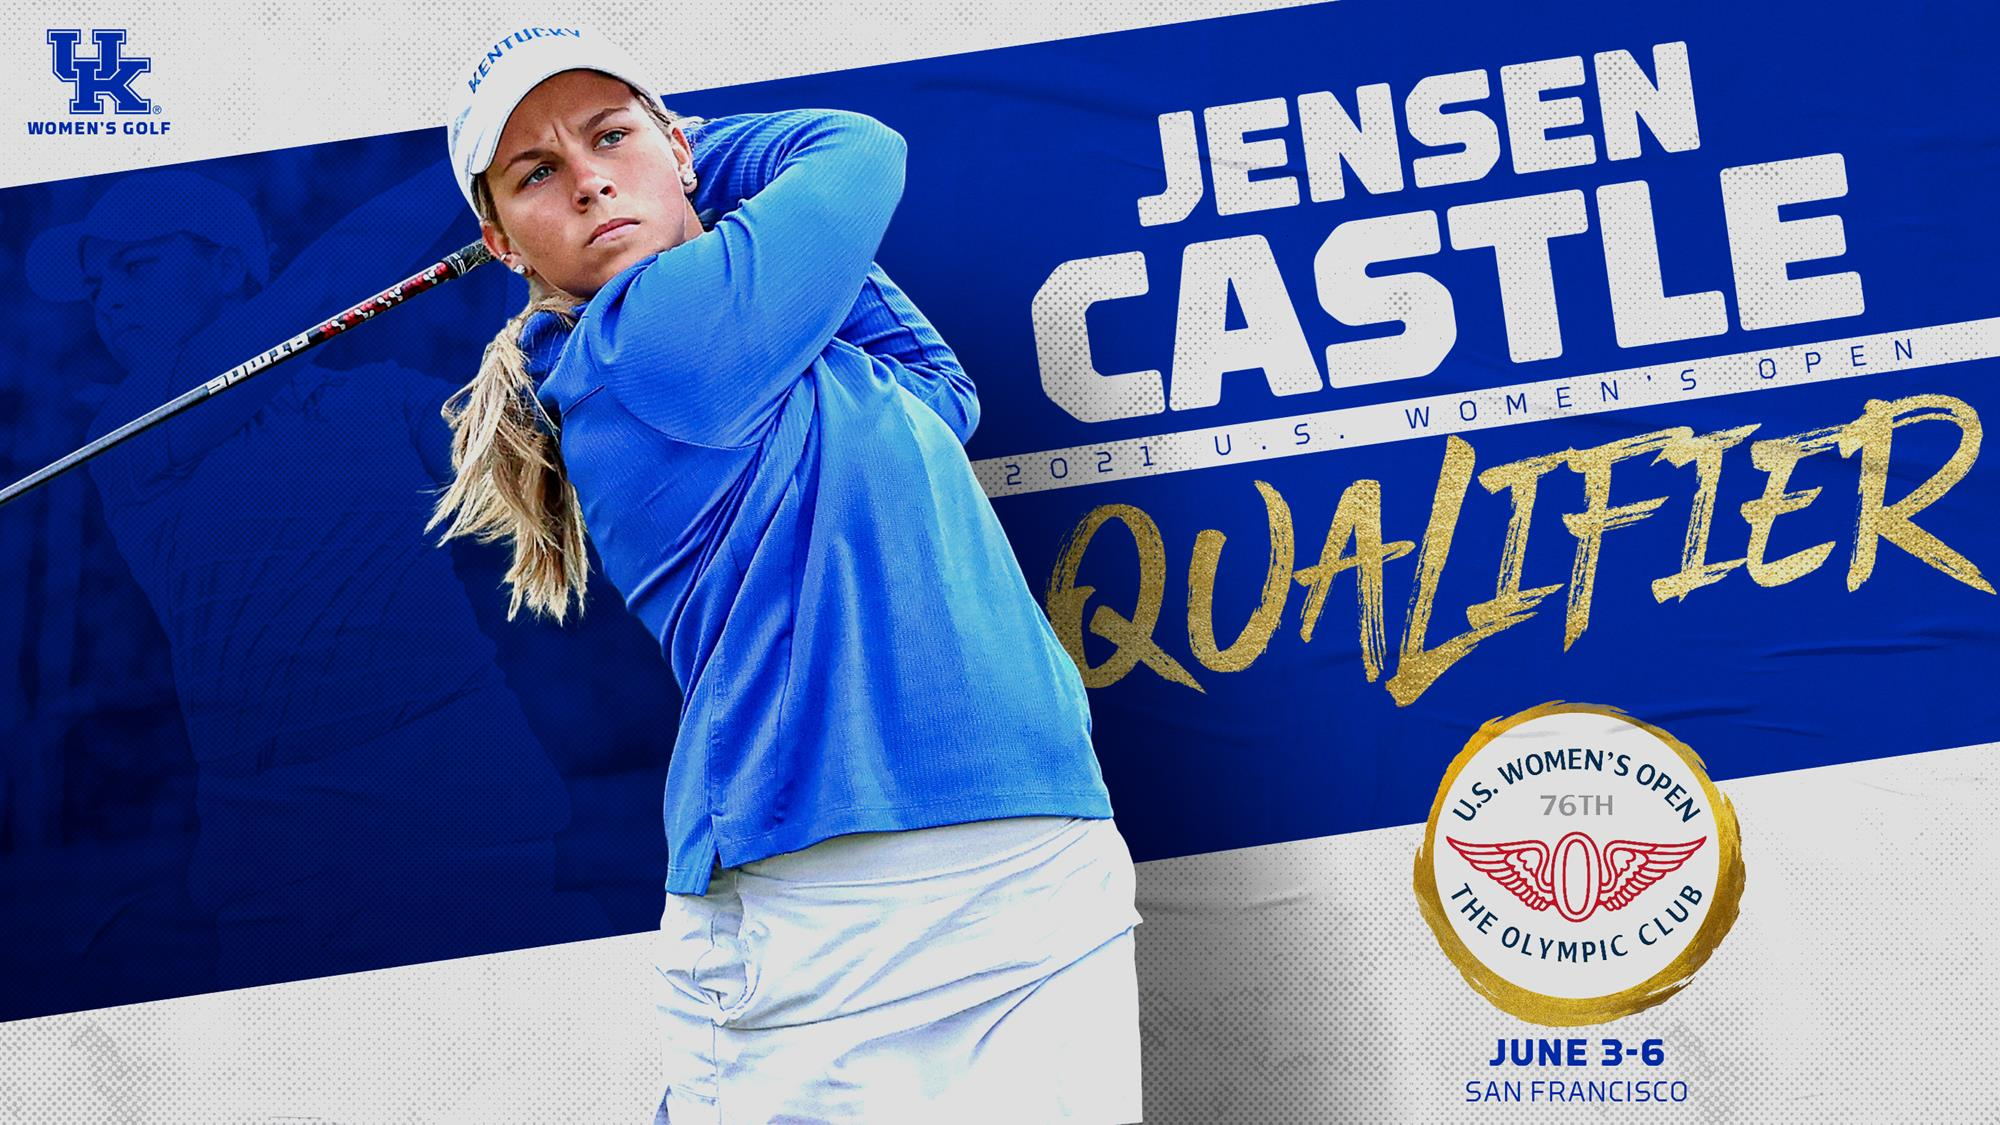 Jensen Castle Begins Play in U.S. Women’s Open on Thursday